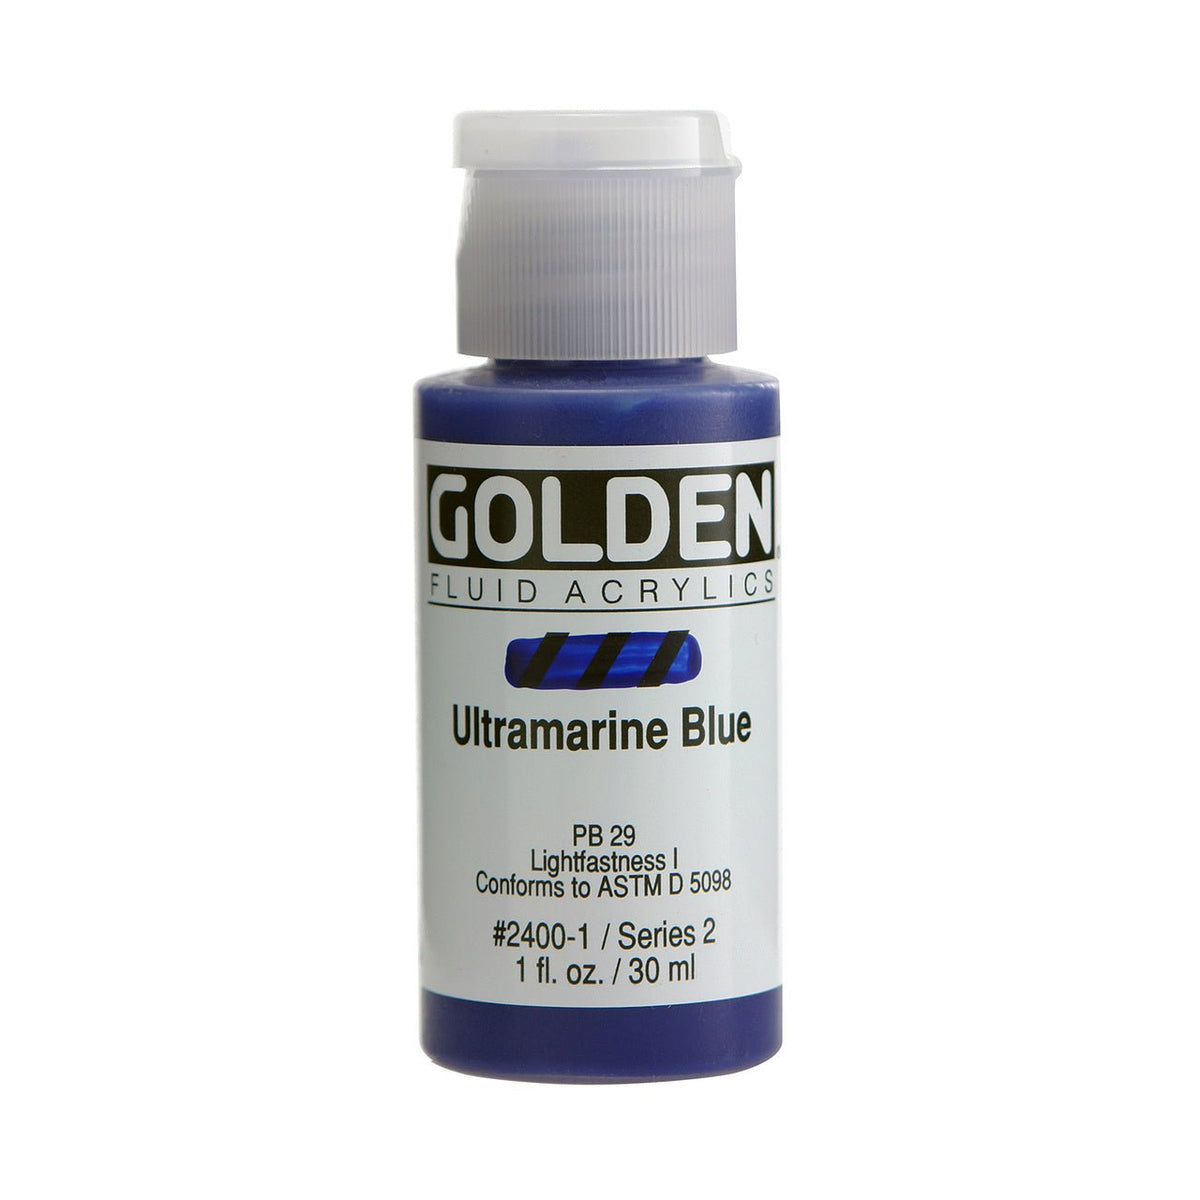 Golden Fluid Acrylic Ultramarine Blue 1 oz - merriartist.com